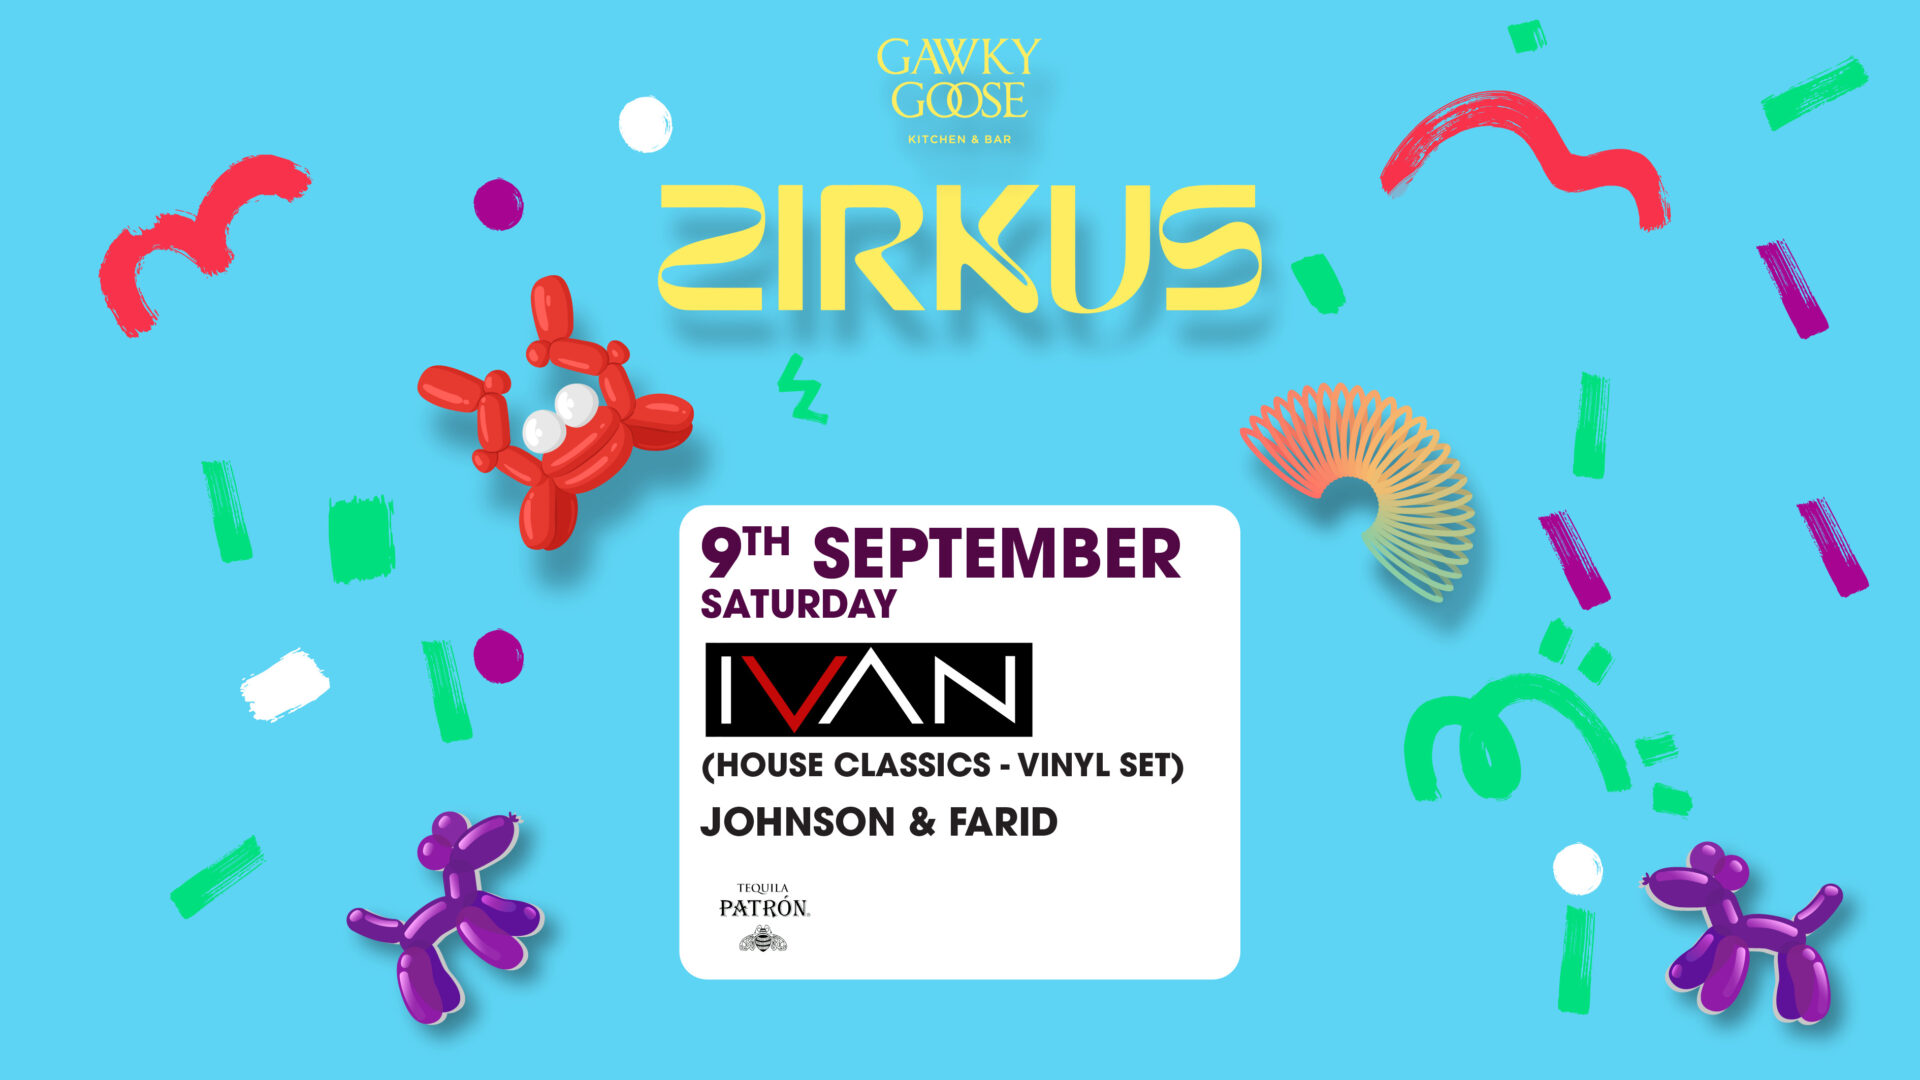 Zirkus - Ivan - 9th September